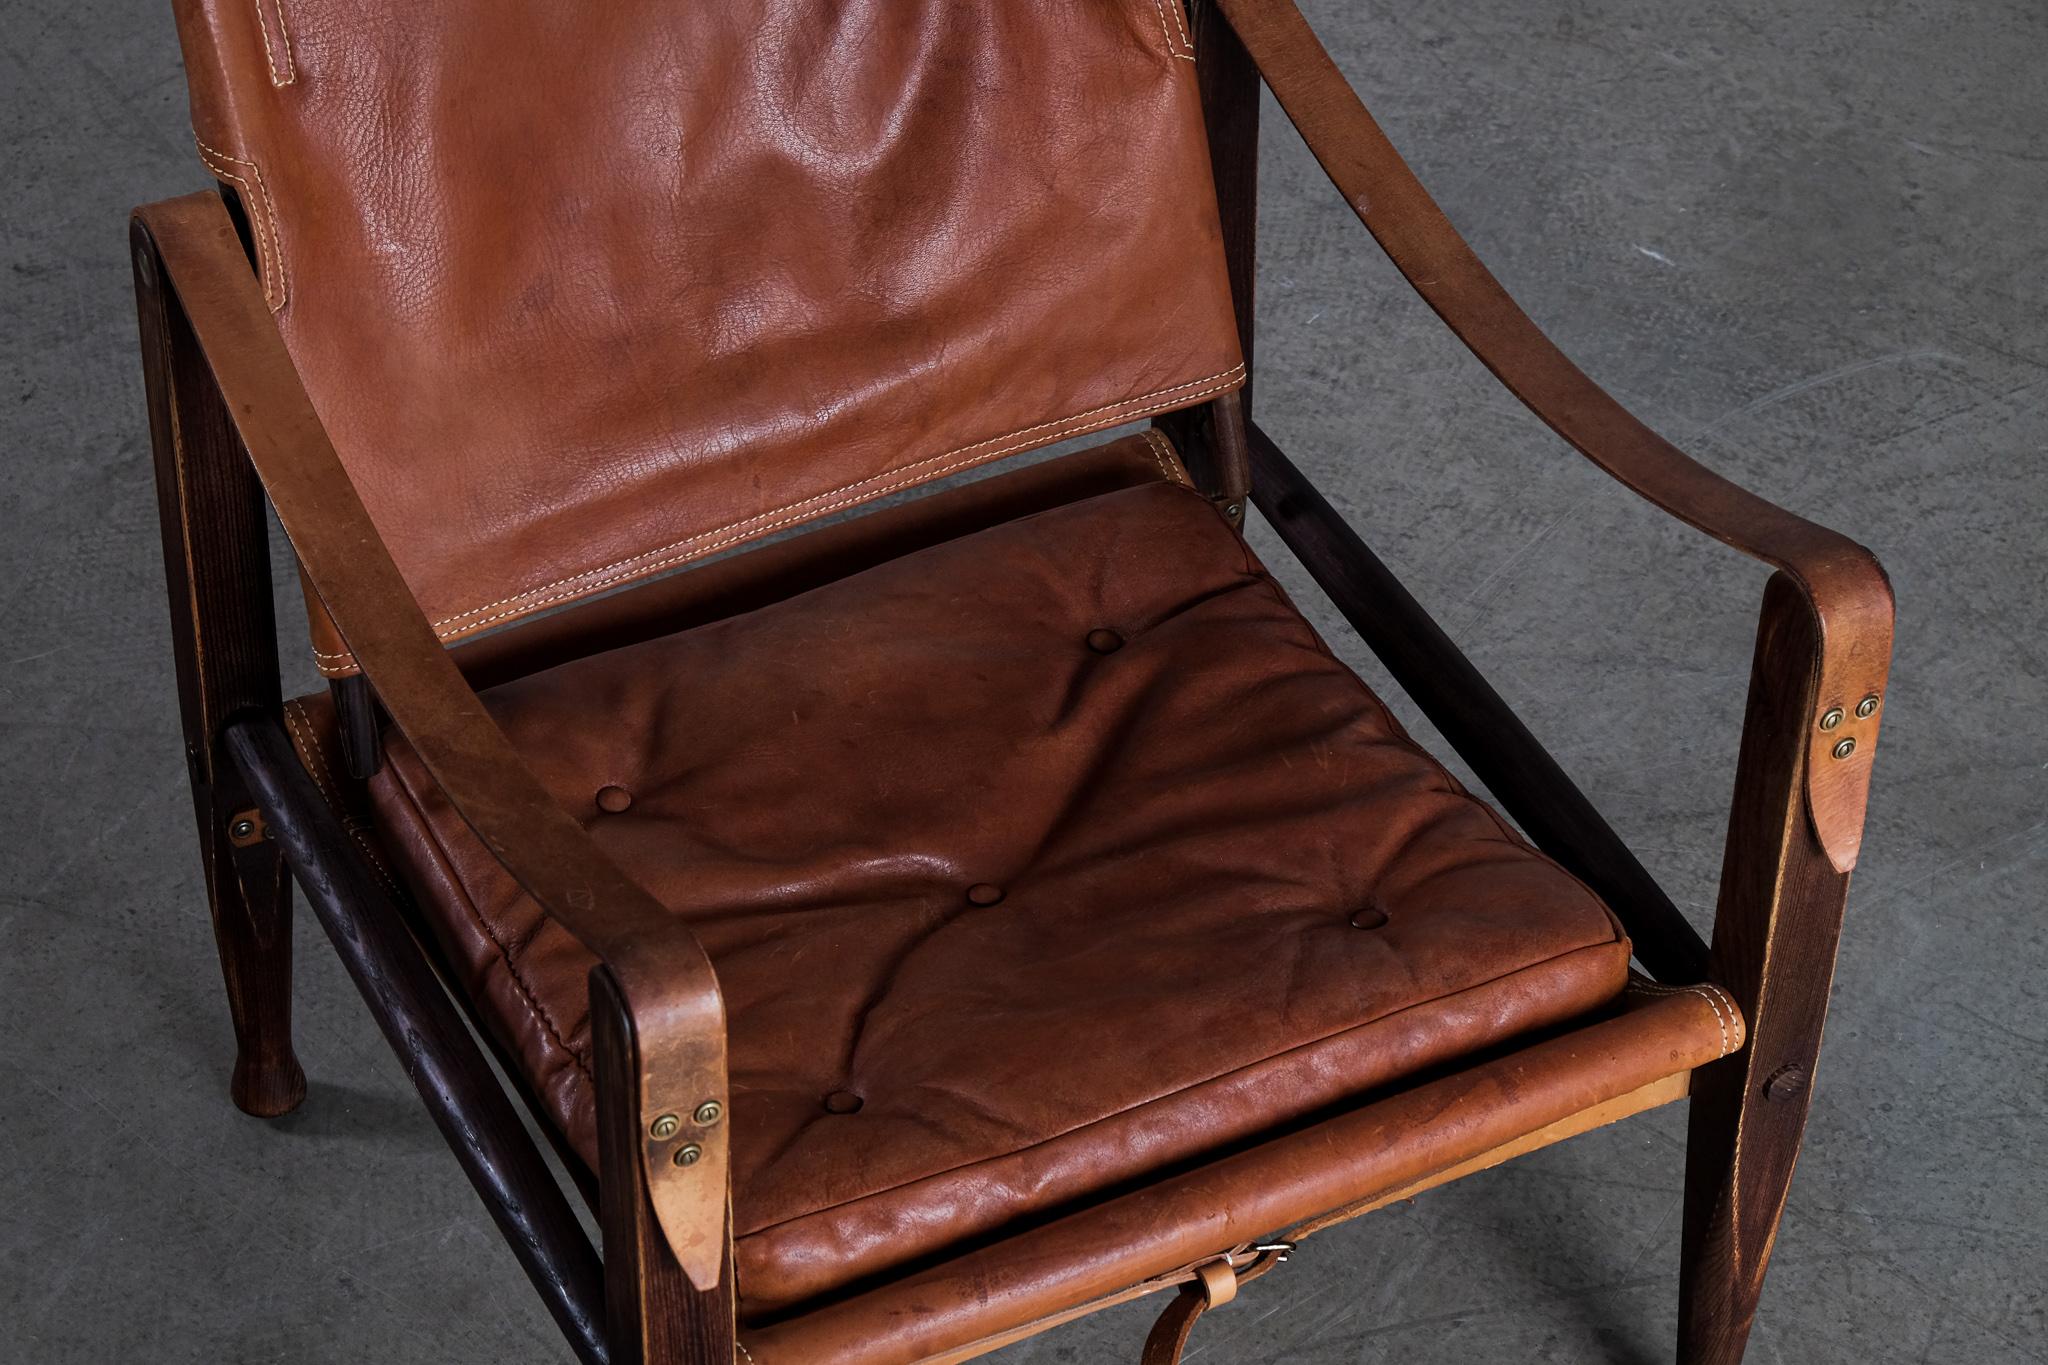 safari chair leather